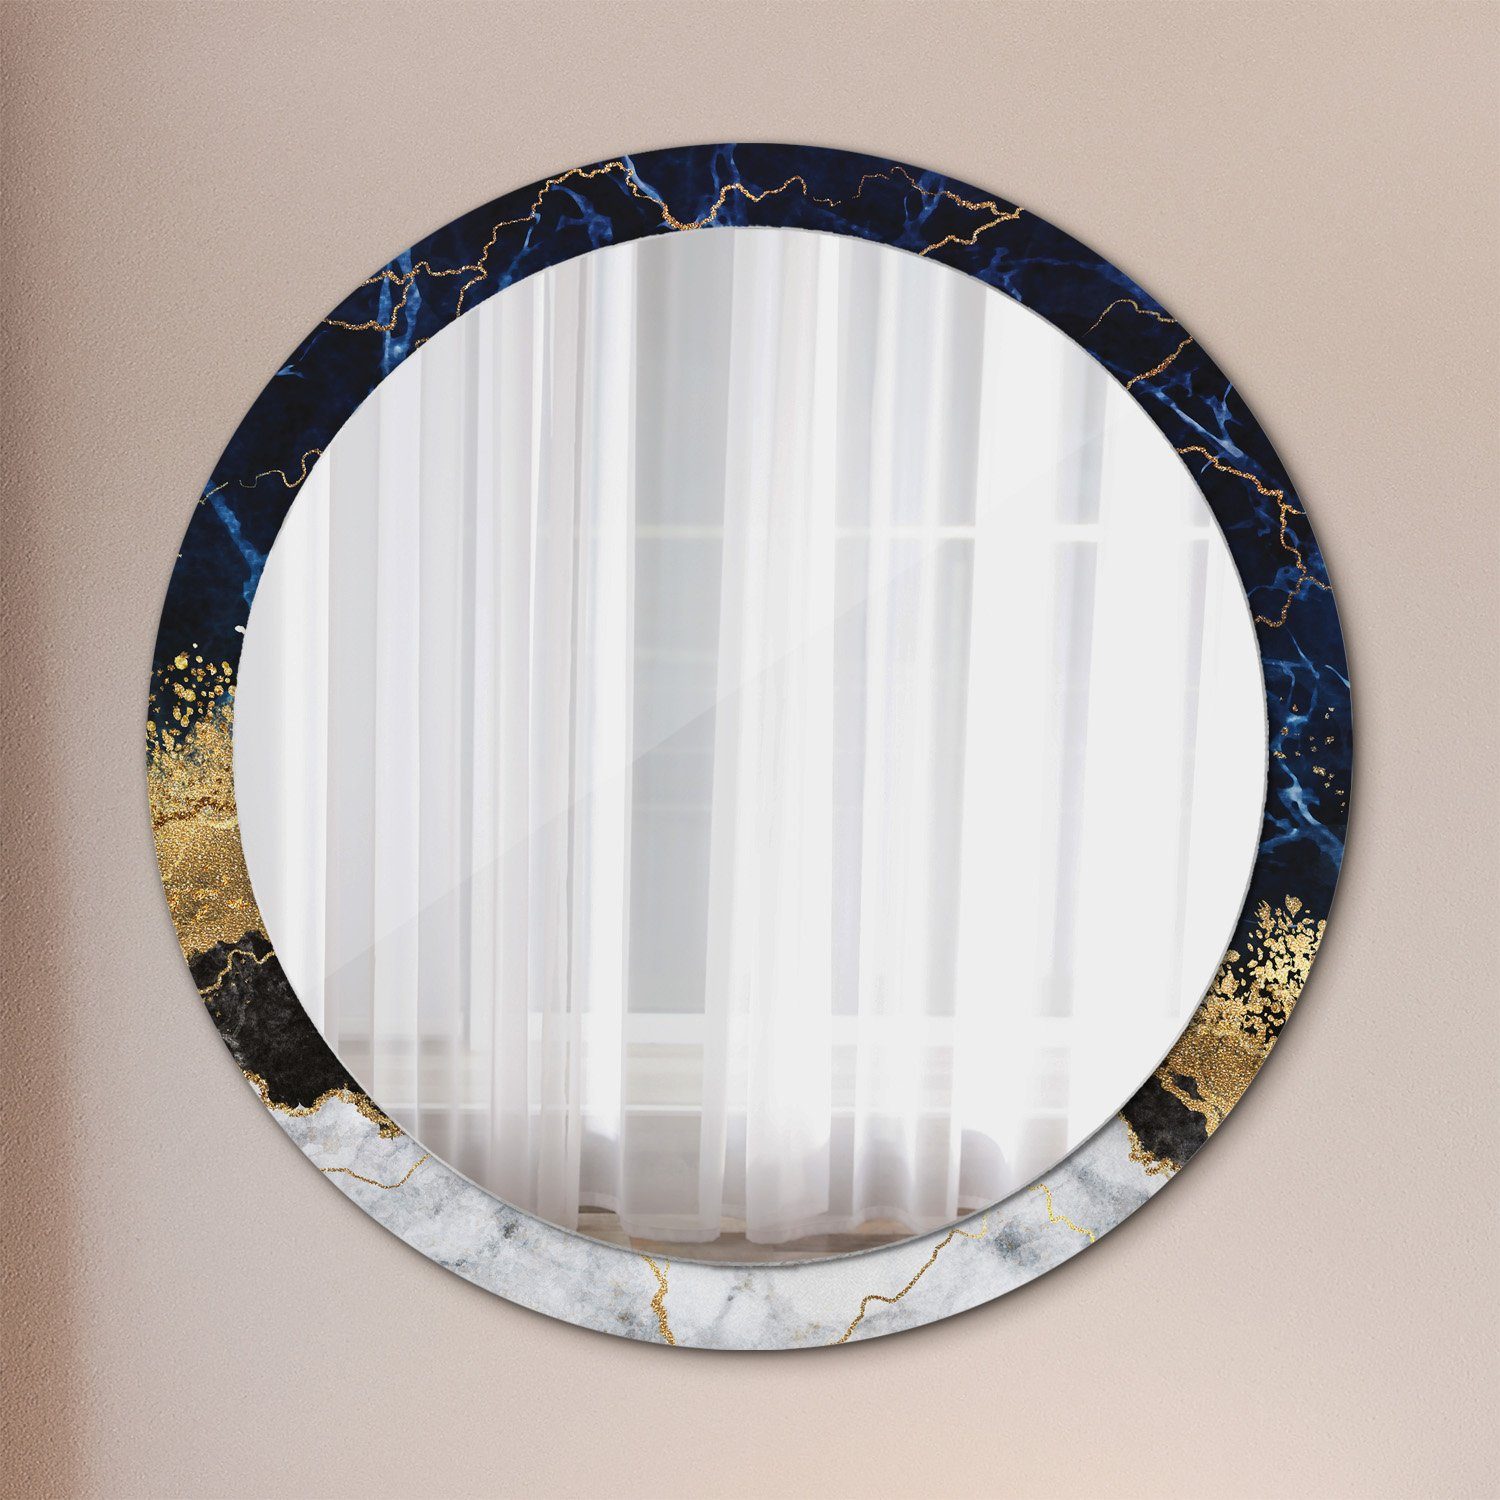 Modernem Runder Deko Aufdruck Spiegel Spiegel mit Blau Runder Modernem Aufdruck mit Ø100cm, Tulup Rundspiegel Rund: Marmor Wandspiegel